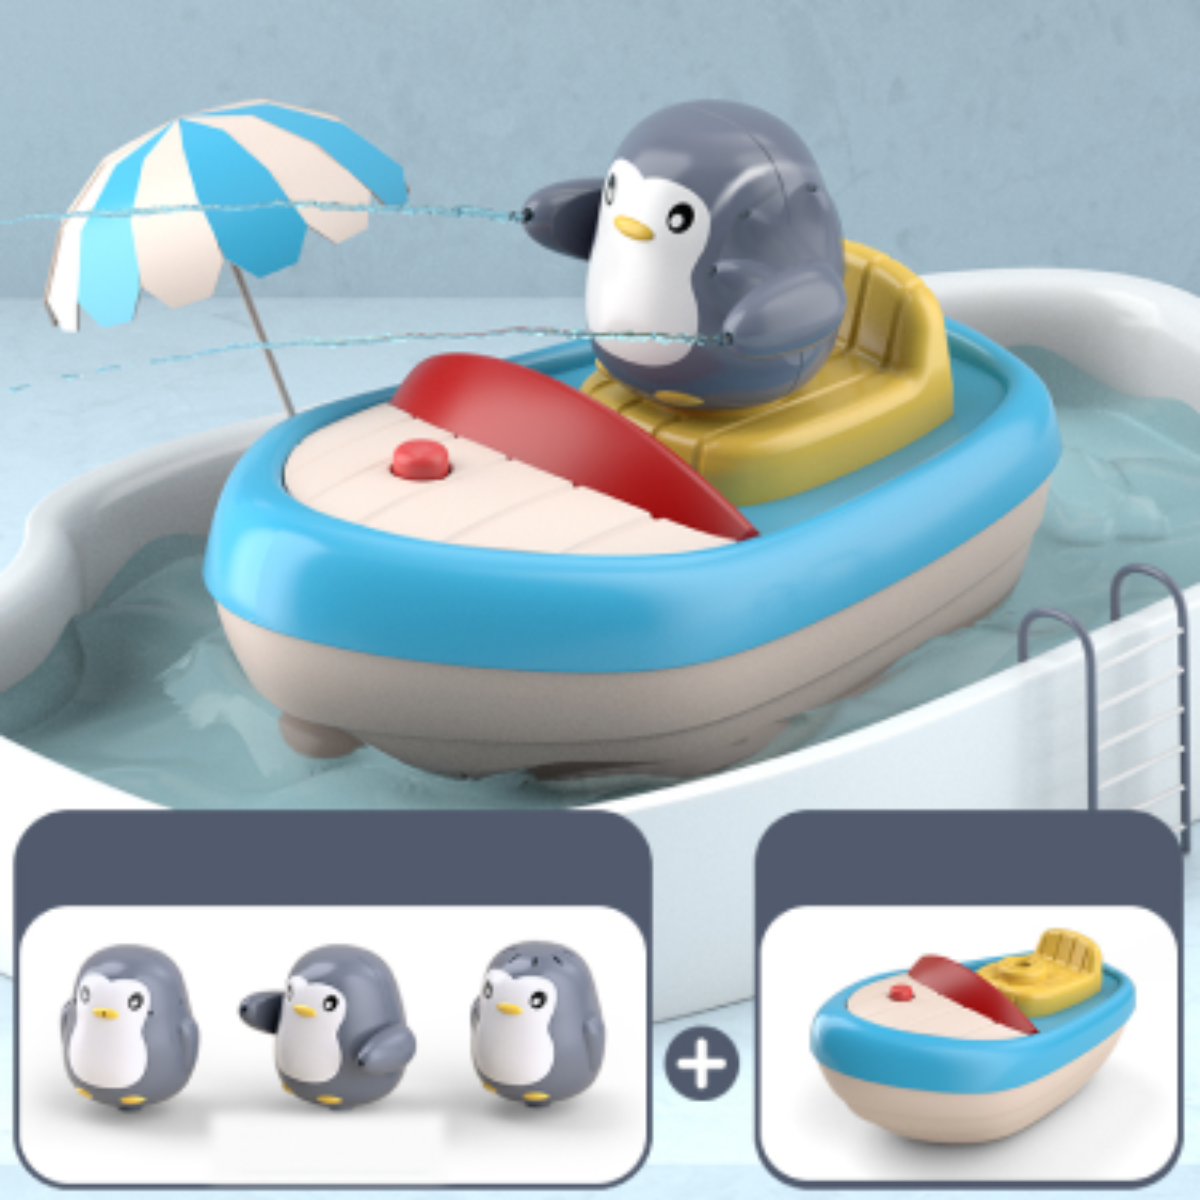 「お風呂おもちゃ」ペンギンの赤ちゃんのお風呂のおもちゃ| 水遊び お風呂おもちゃ お風呂嫌い解消